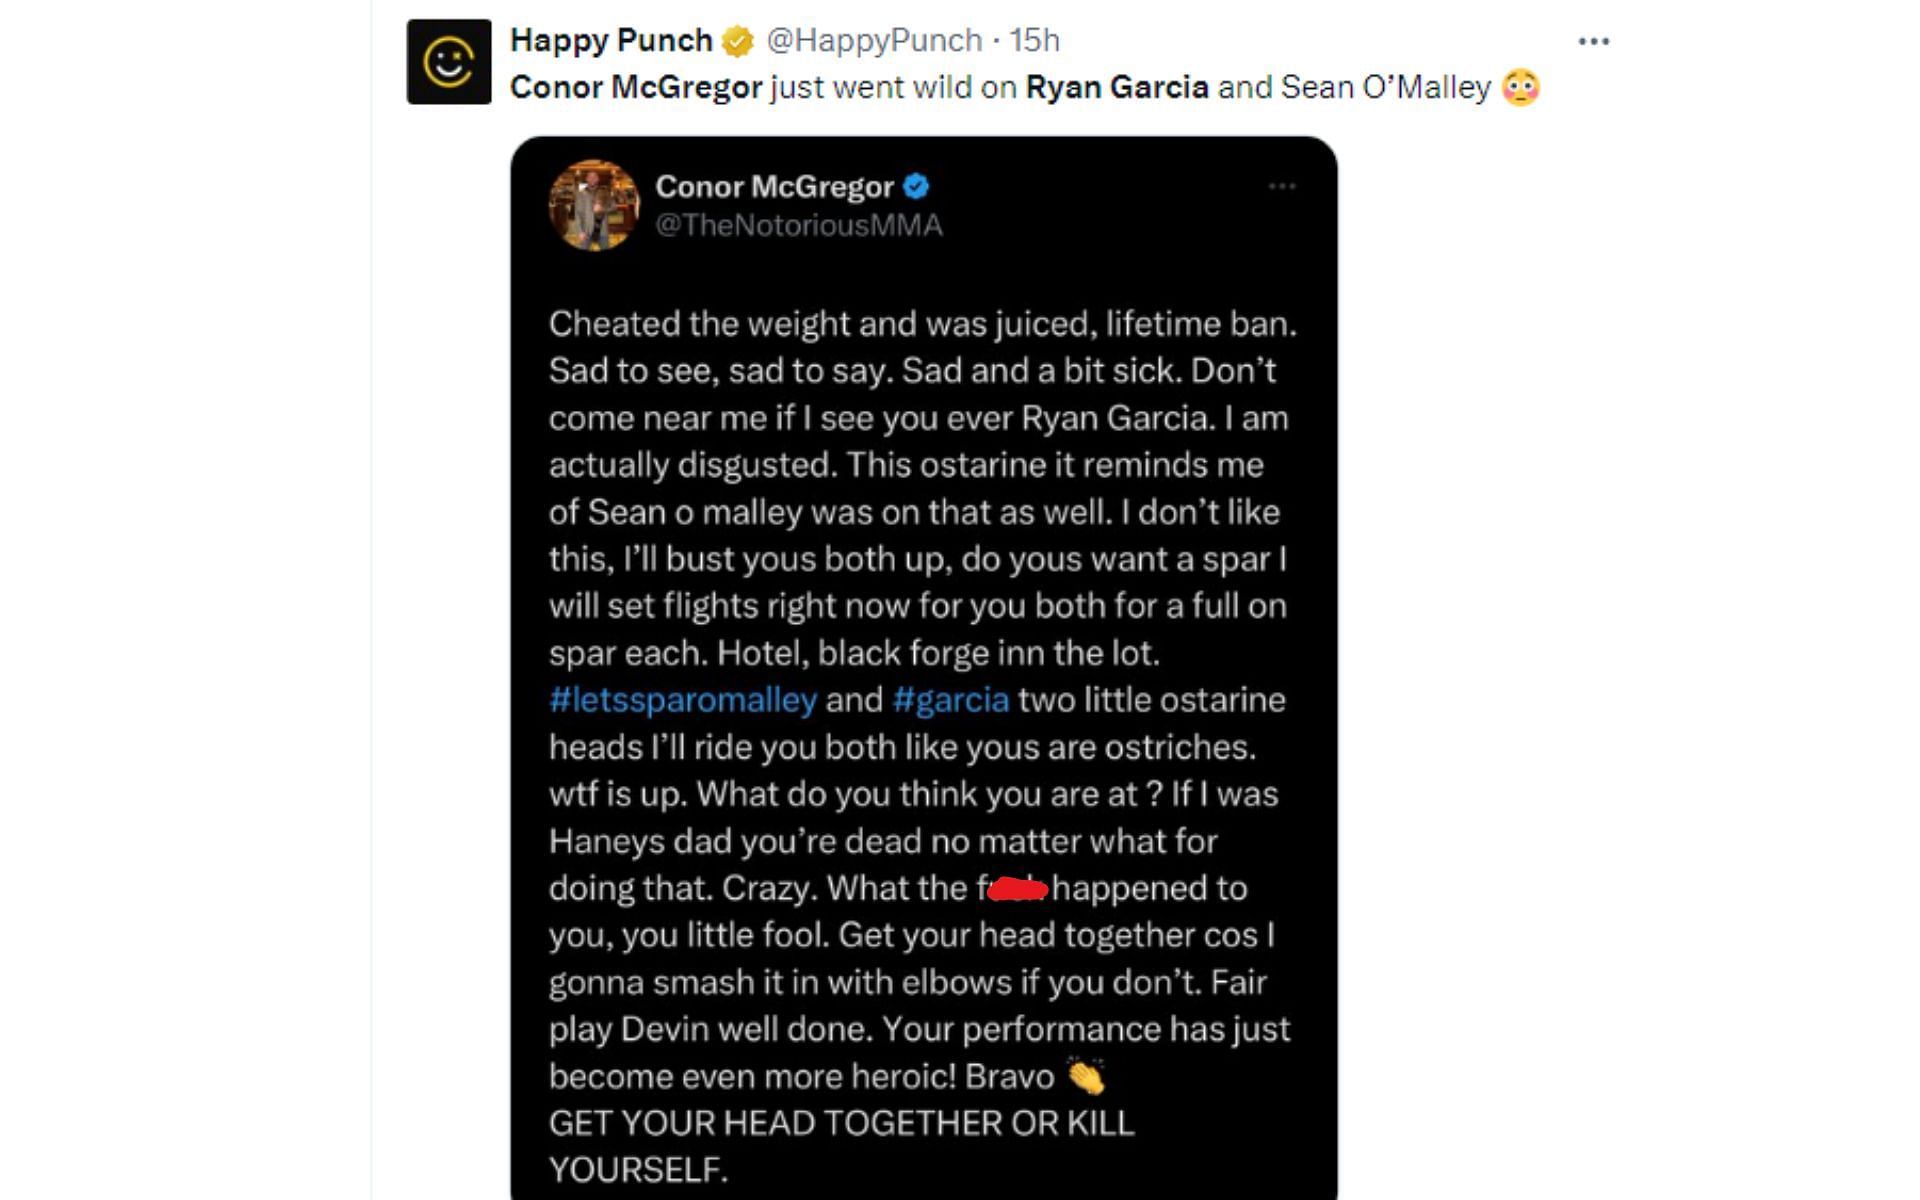 Conor McGregor&#039;s deleted tweet regarding Garcia [Image courtesy: @HappyPunch - X]